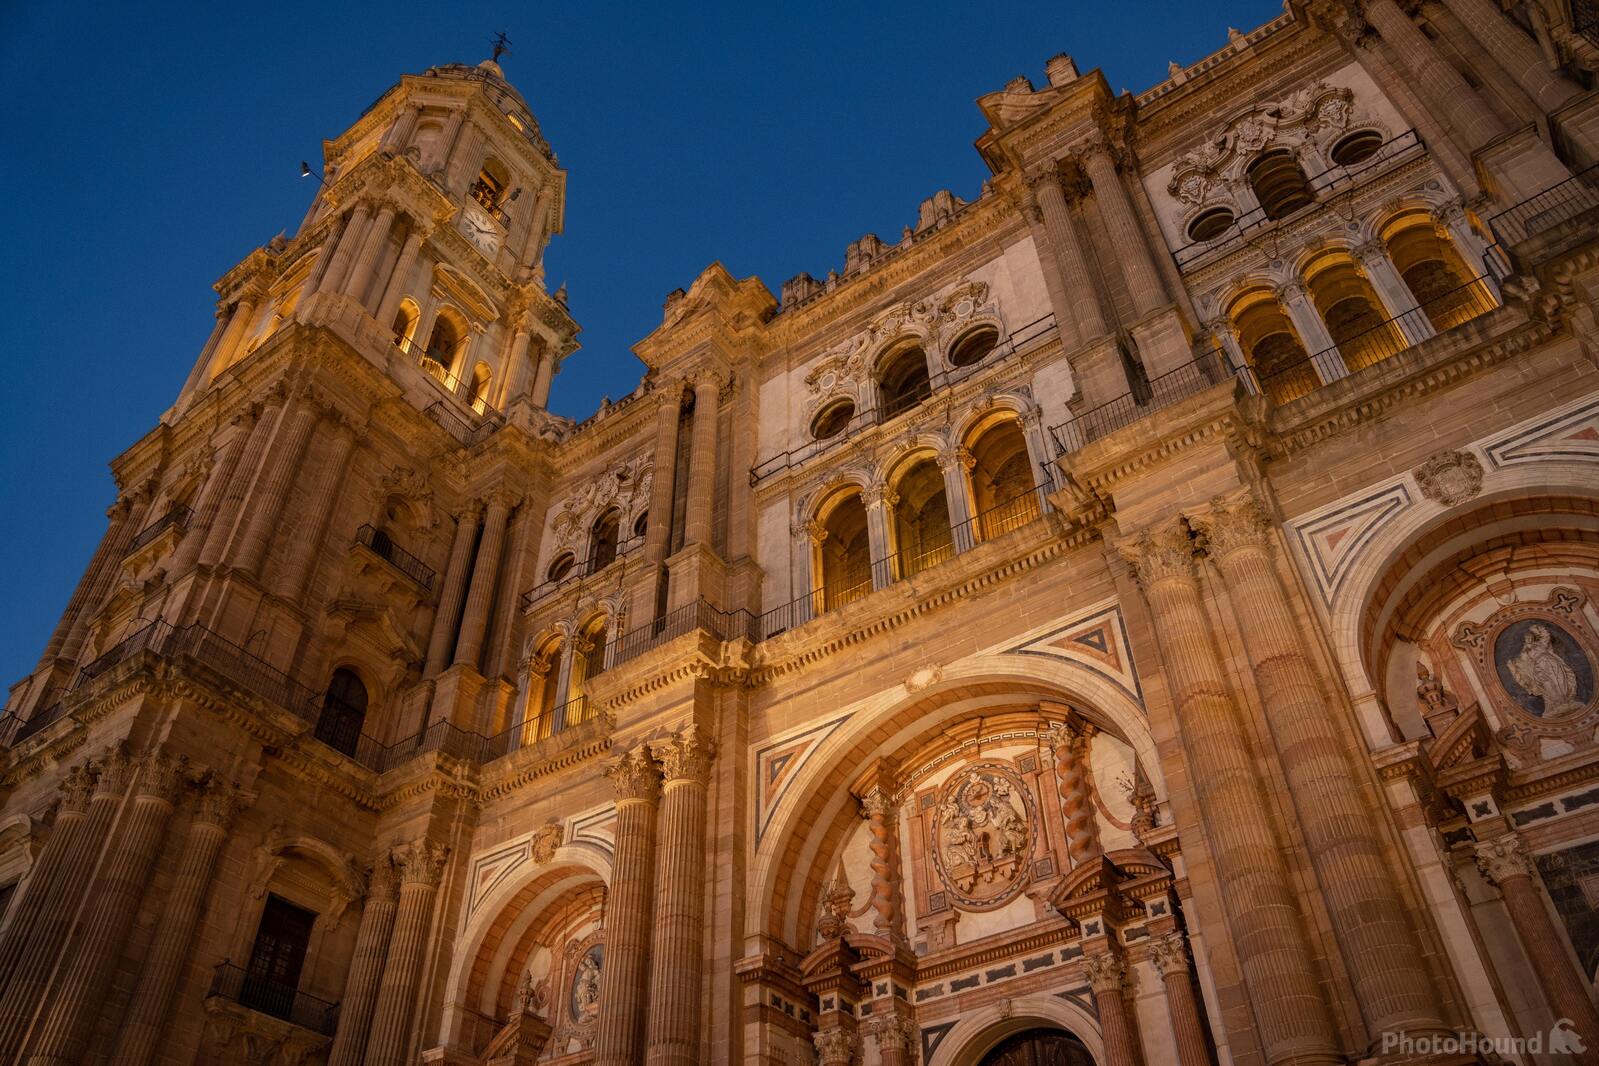 Image of Catedral de Nuestra Señora de la Encarnación by Team PhotoHound